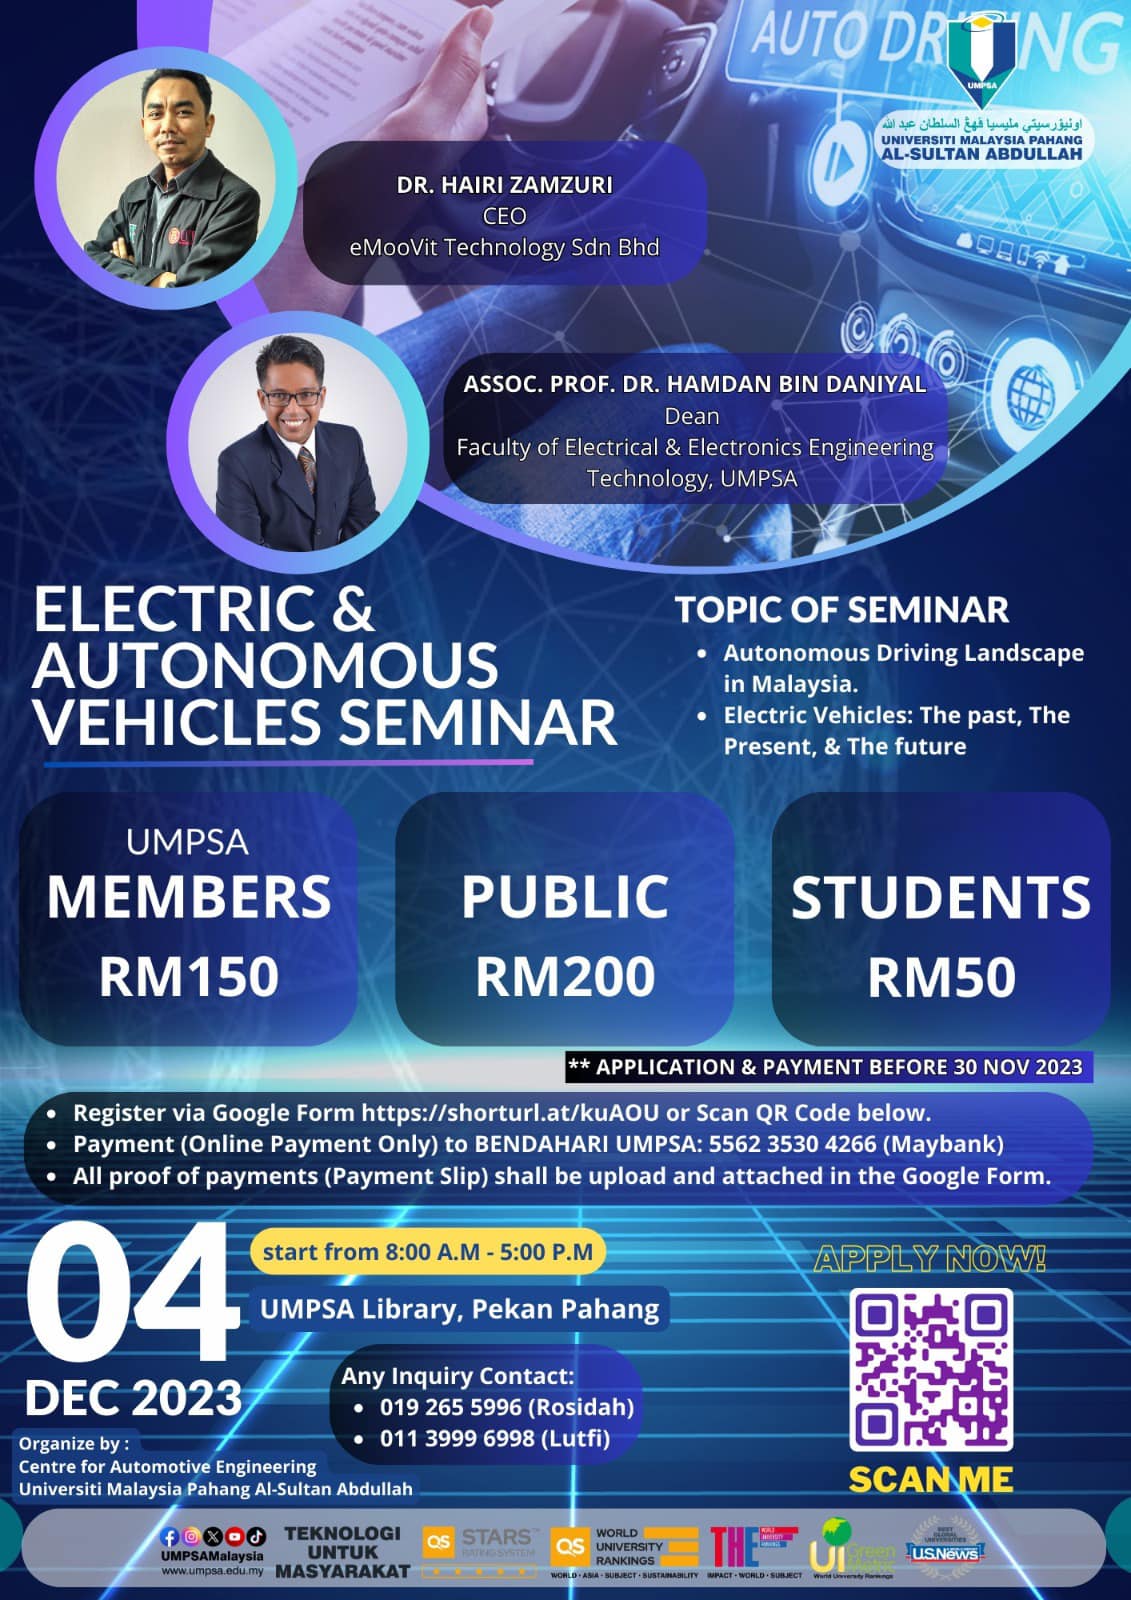 Seminar on Electric & Autonomous Vehicles